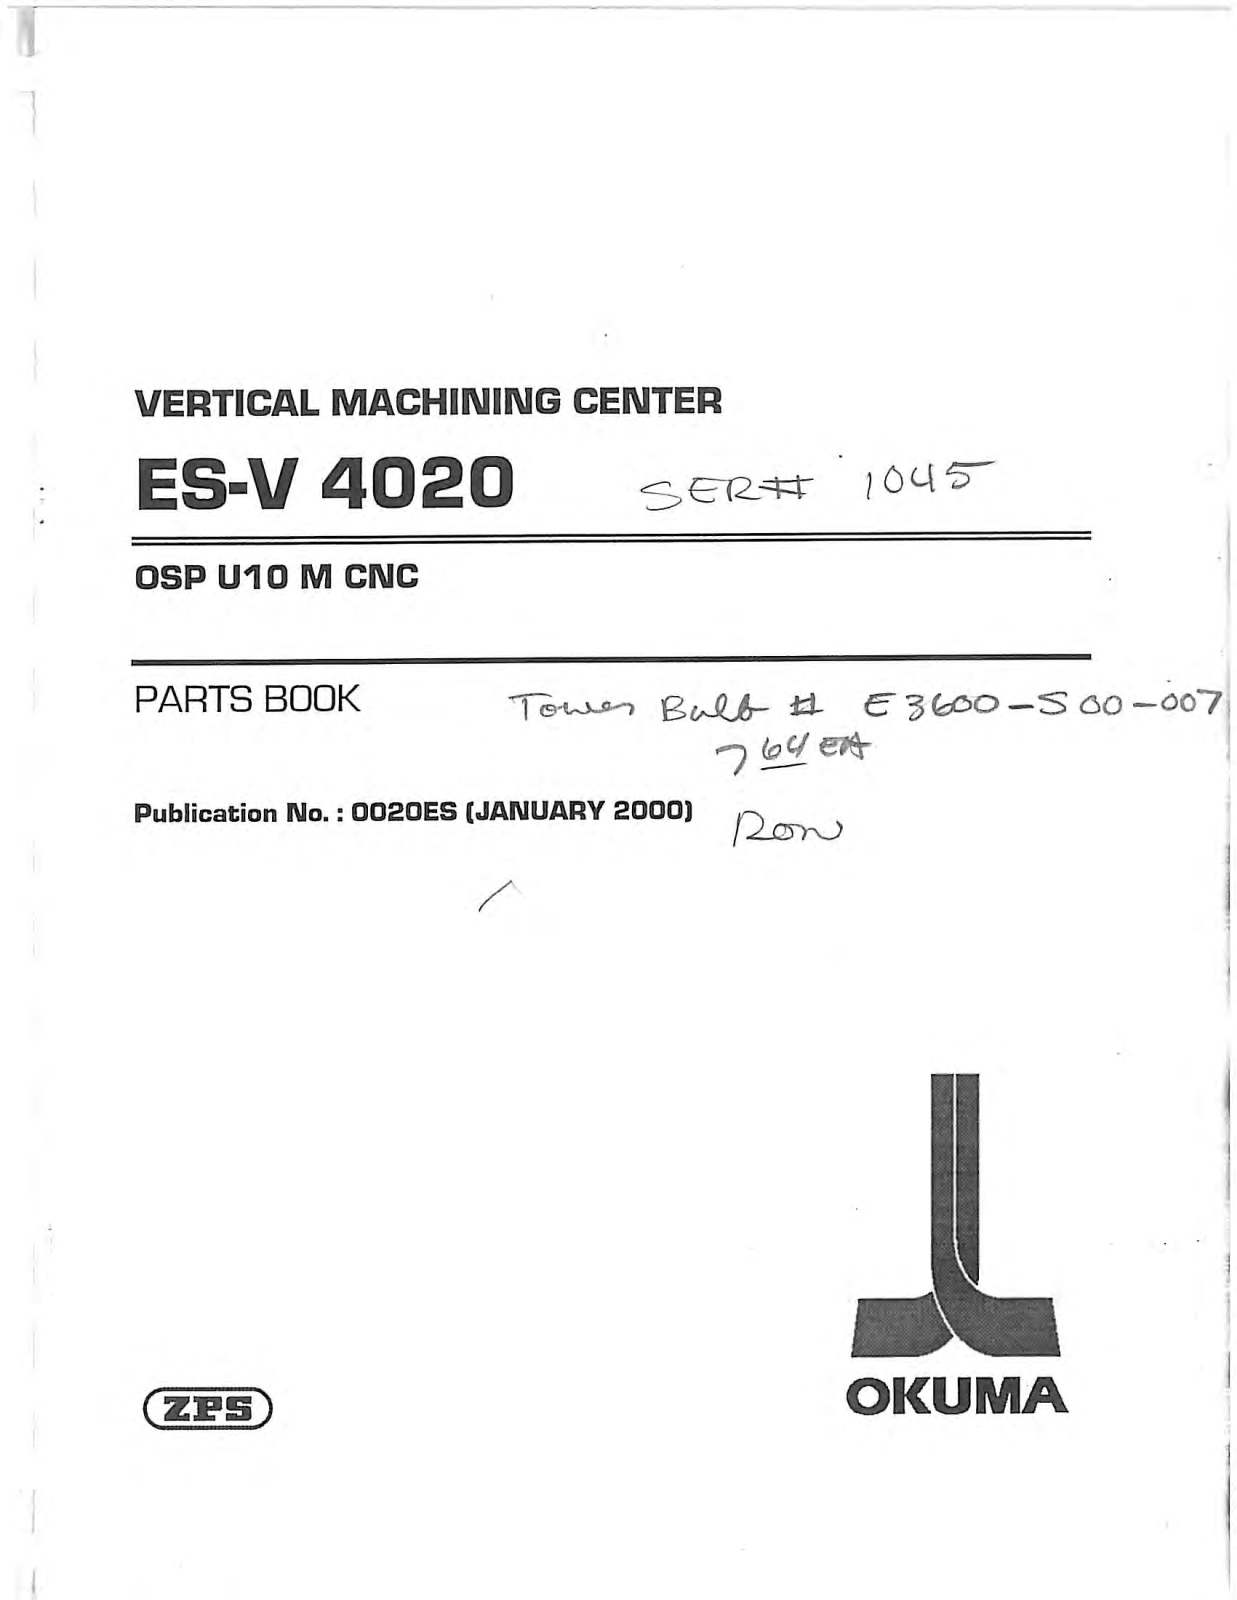 okuma OSP U10M User Manual